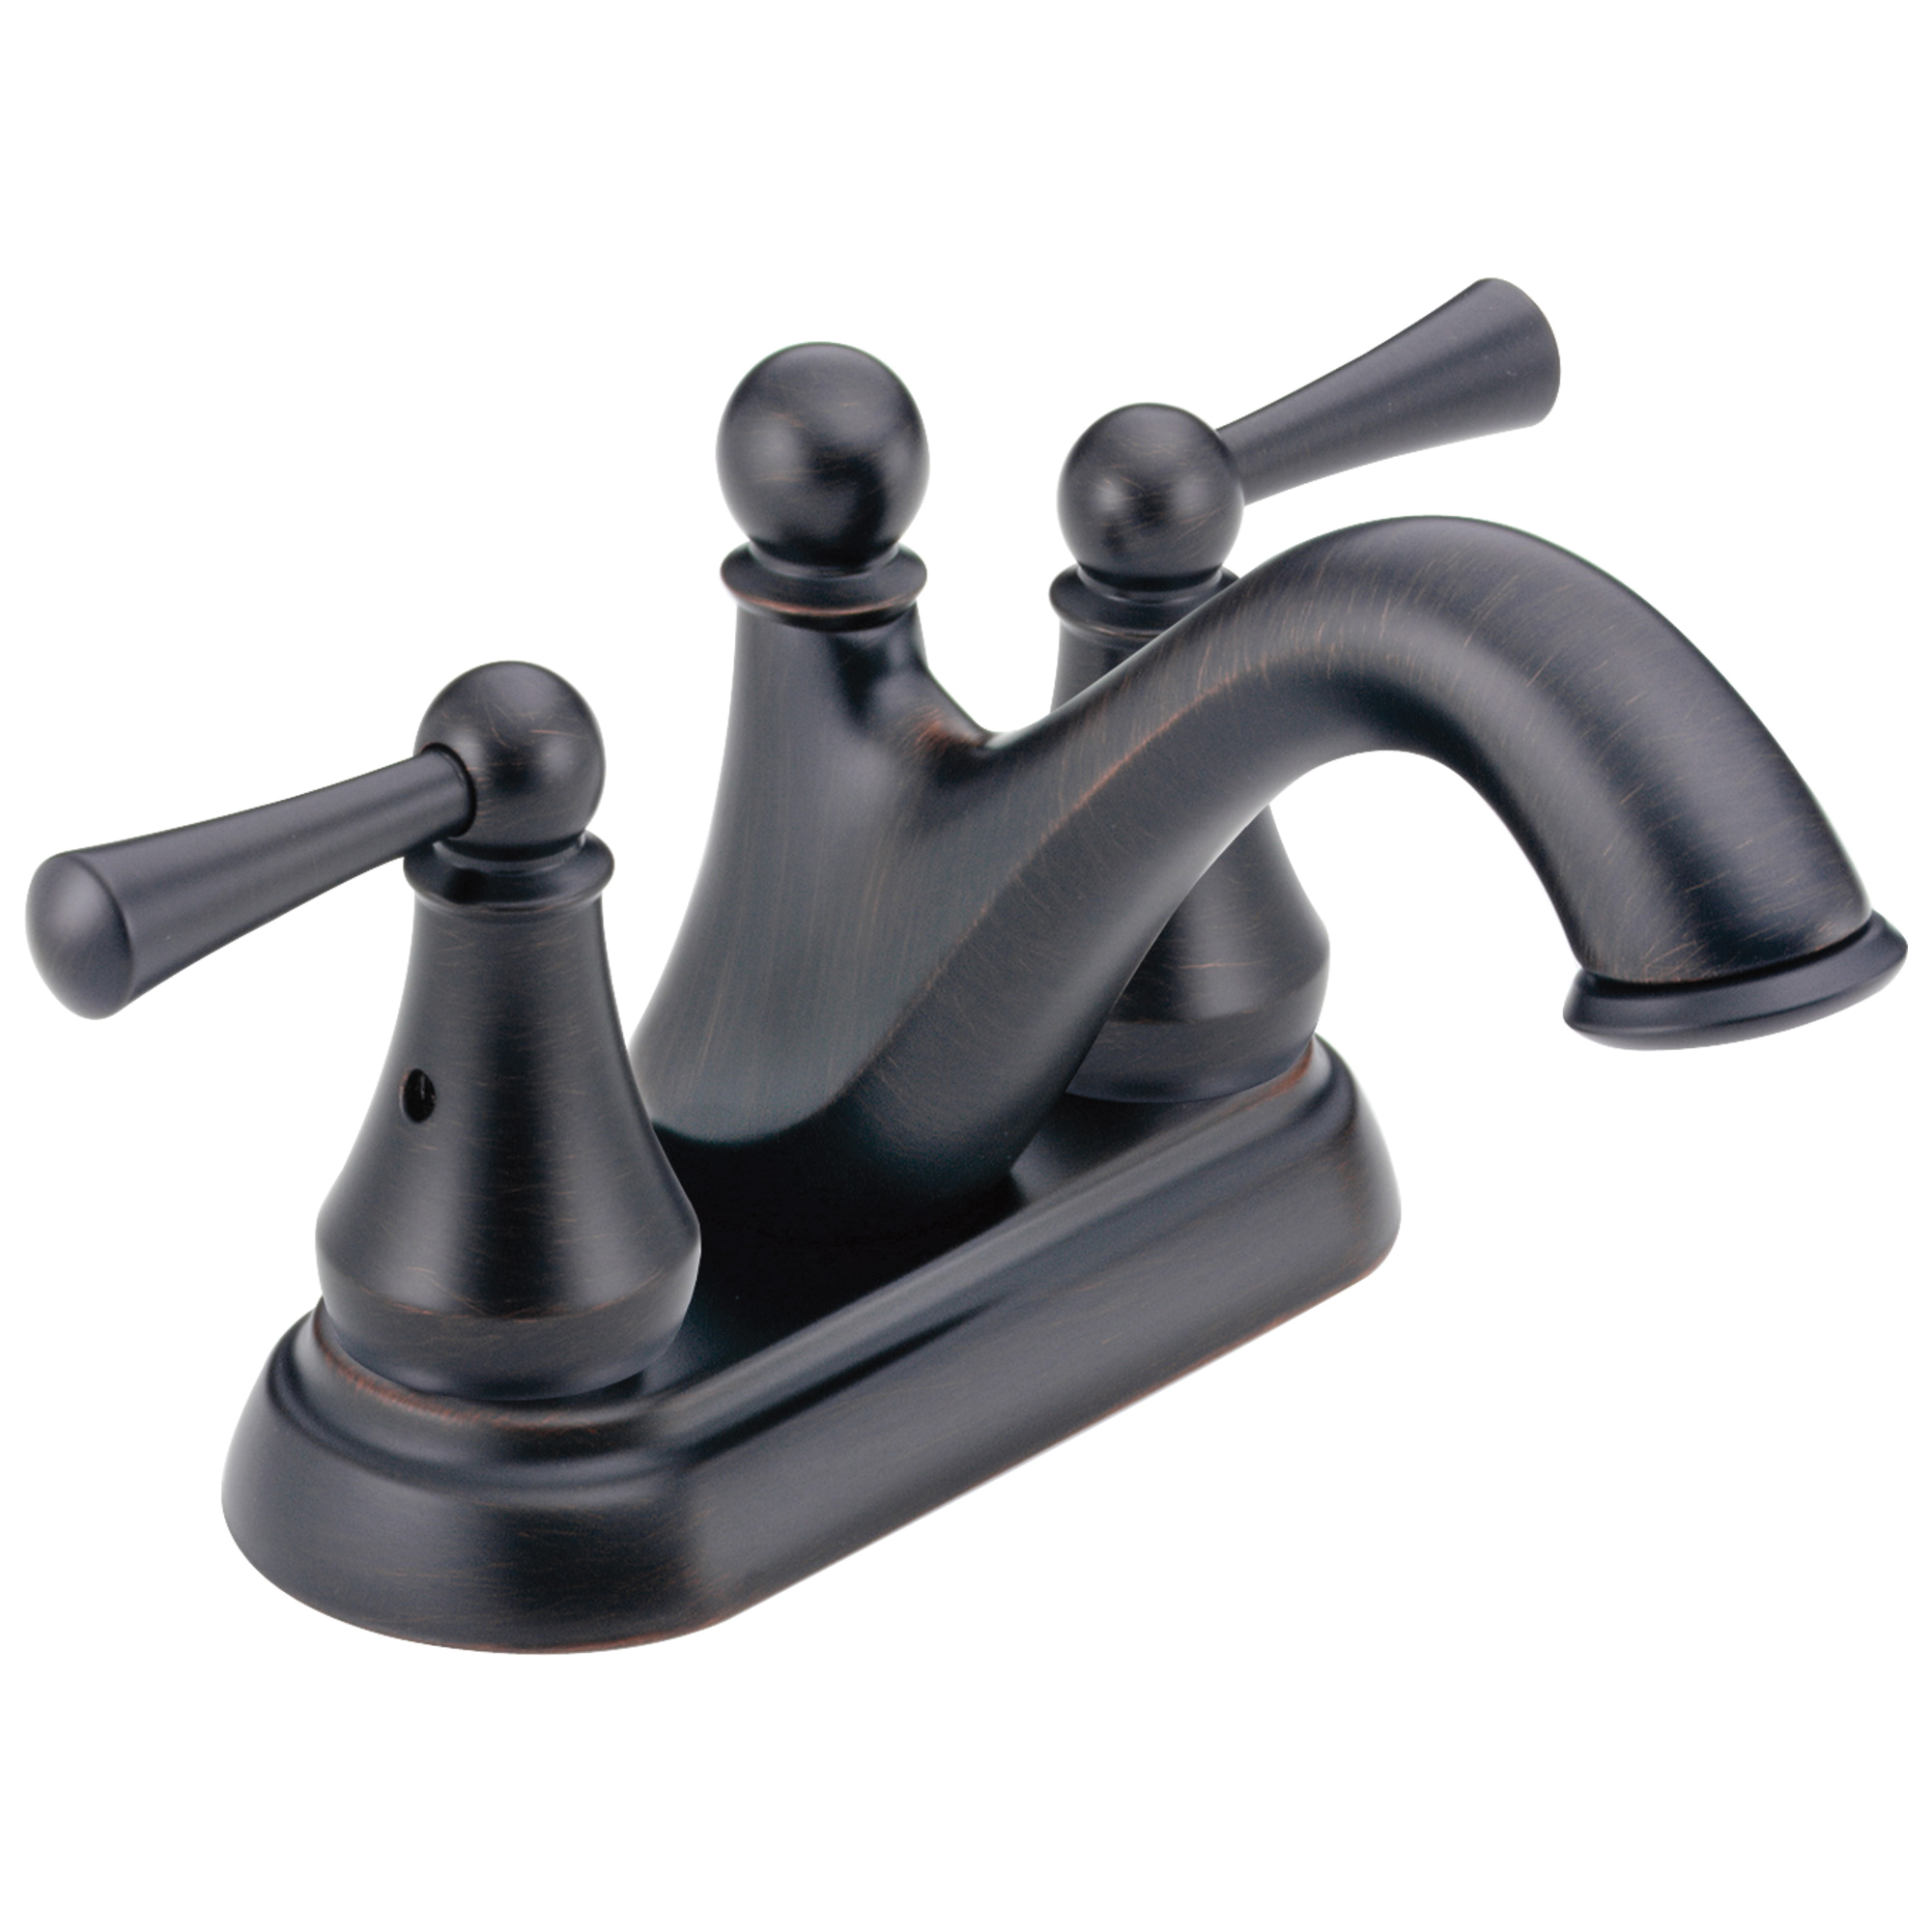 DELTA® 25999LF-RB Centerset Lavatory Faucet, Haywood™, Venetian Bronze, 2 Handles, Plastic Pop-Up Drain, 1.2 gpm